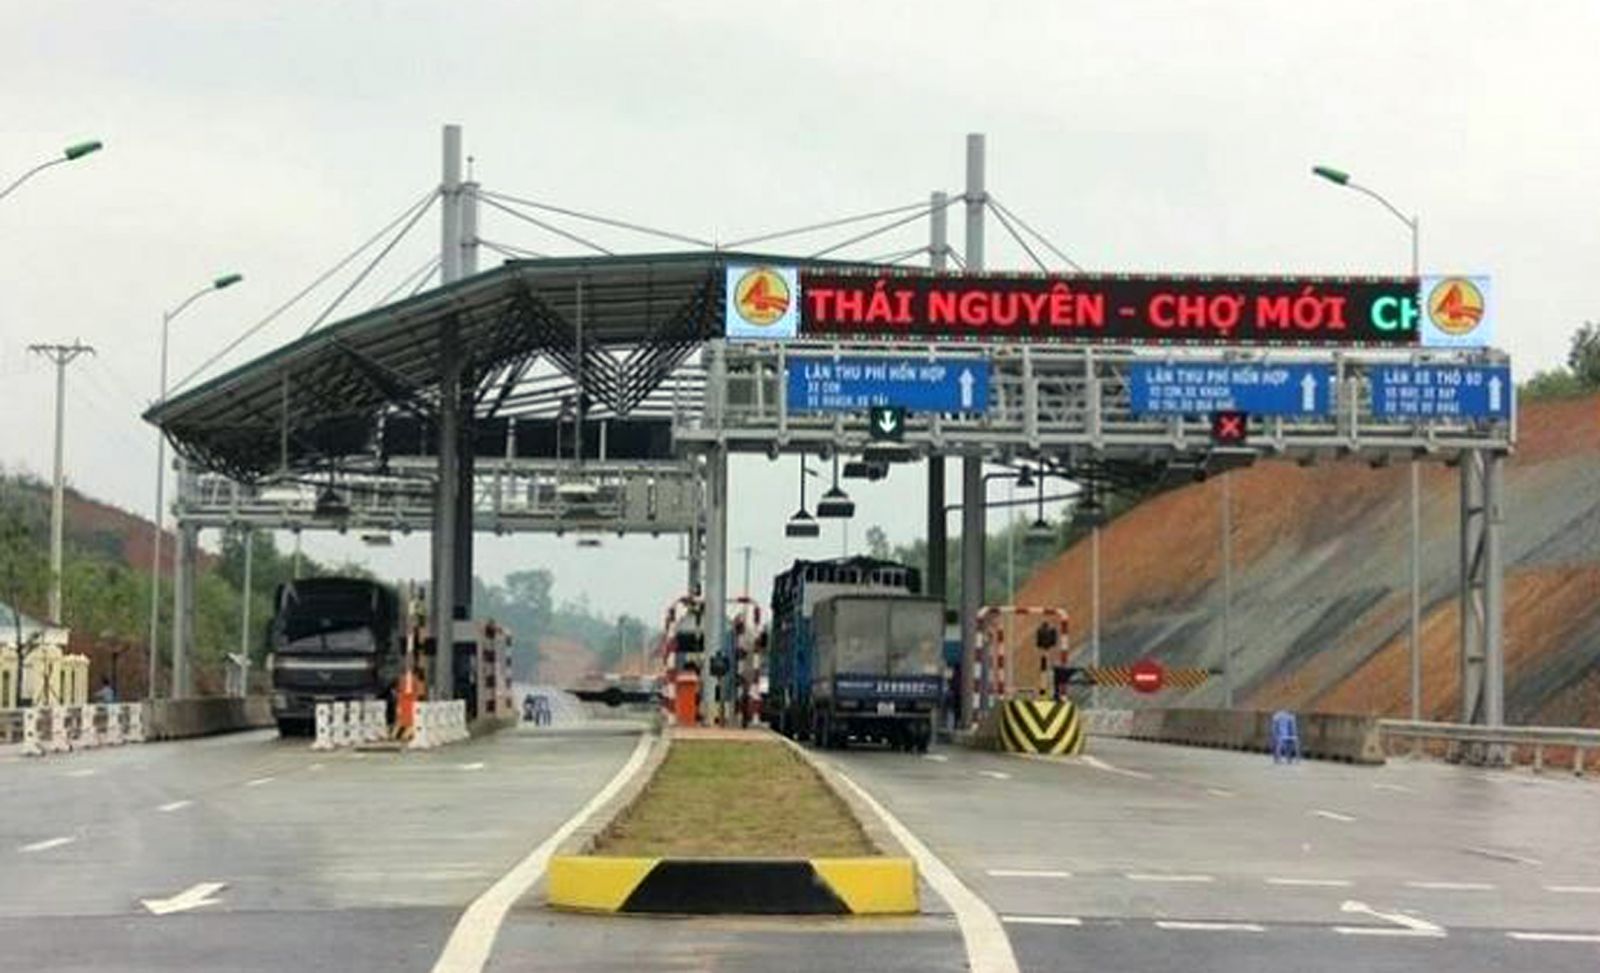 Sau 6 tháng vận hành thu phí tại trạm Km 72+930, doanh thu dự án BOT tuyến đường Thái Nguyên - Chợ Mới chỉ đạt khoảng 13 tỷ đồng 